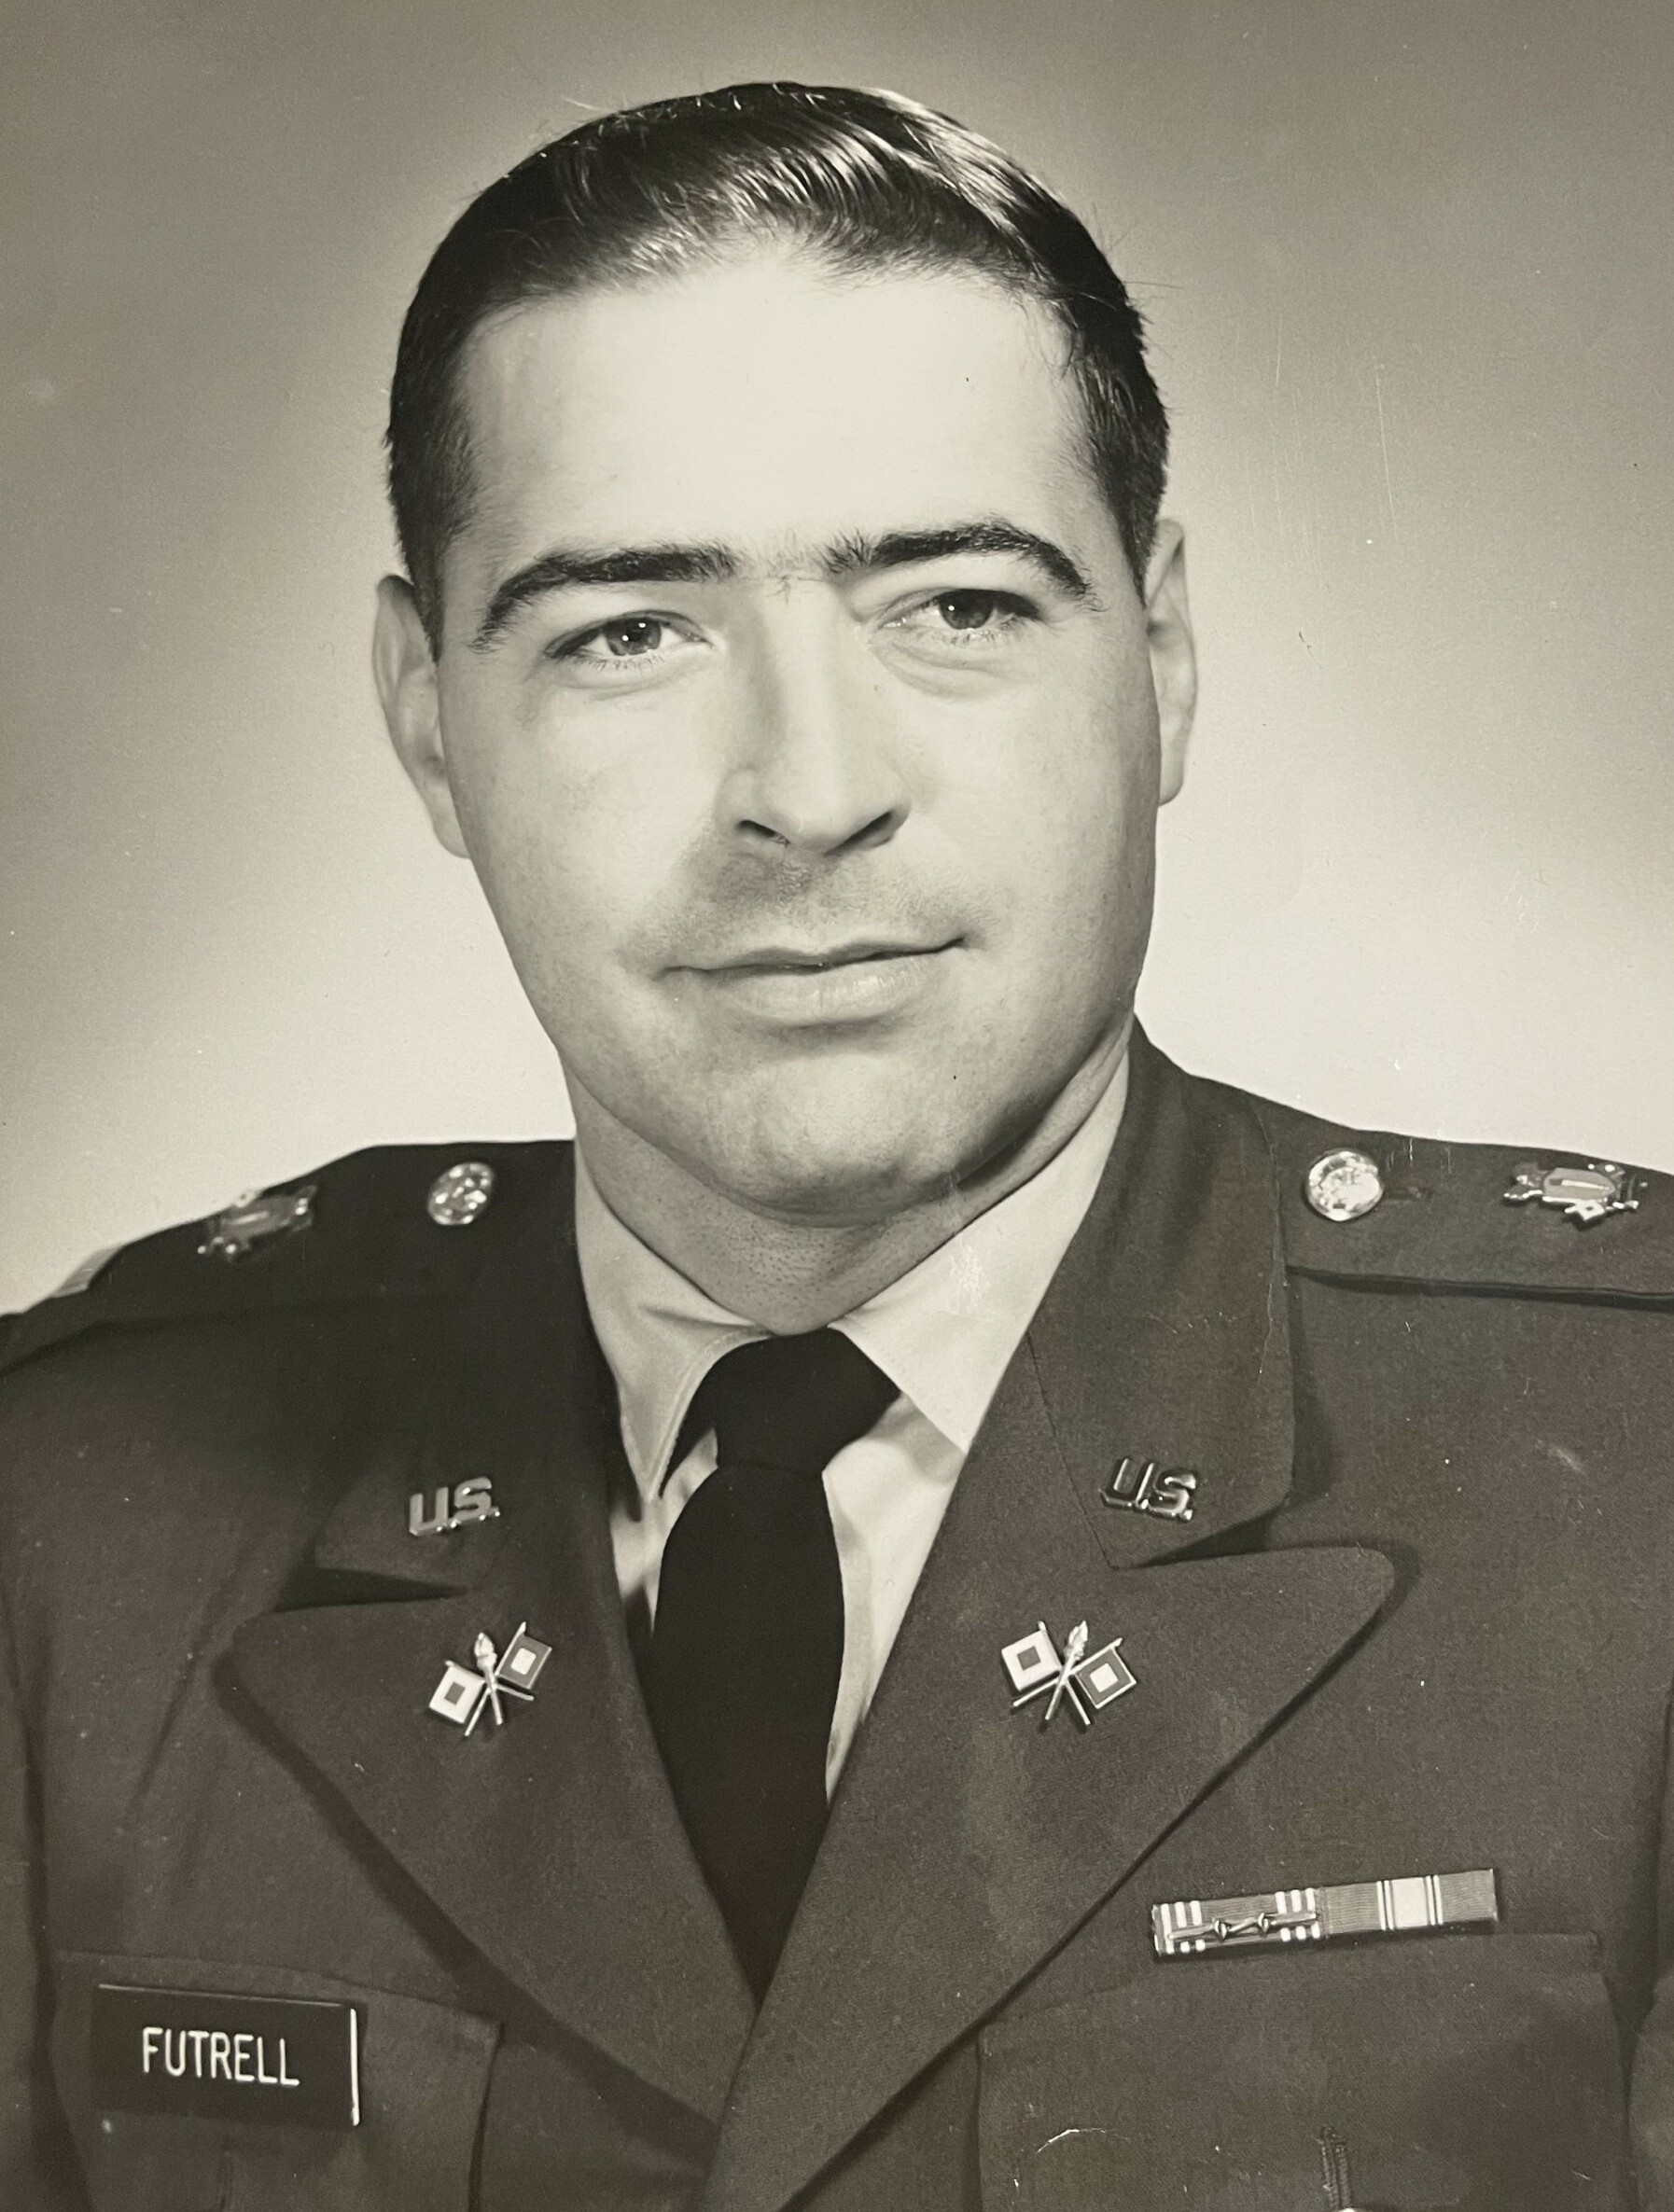 Albert Futrell, Jr.